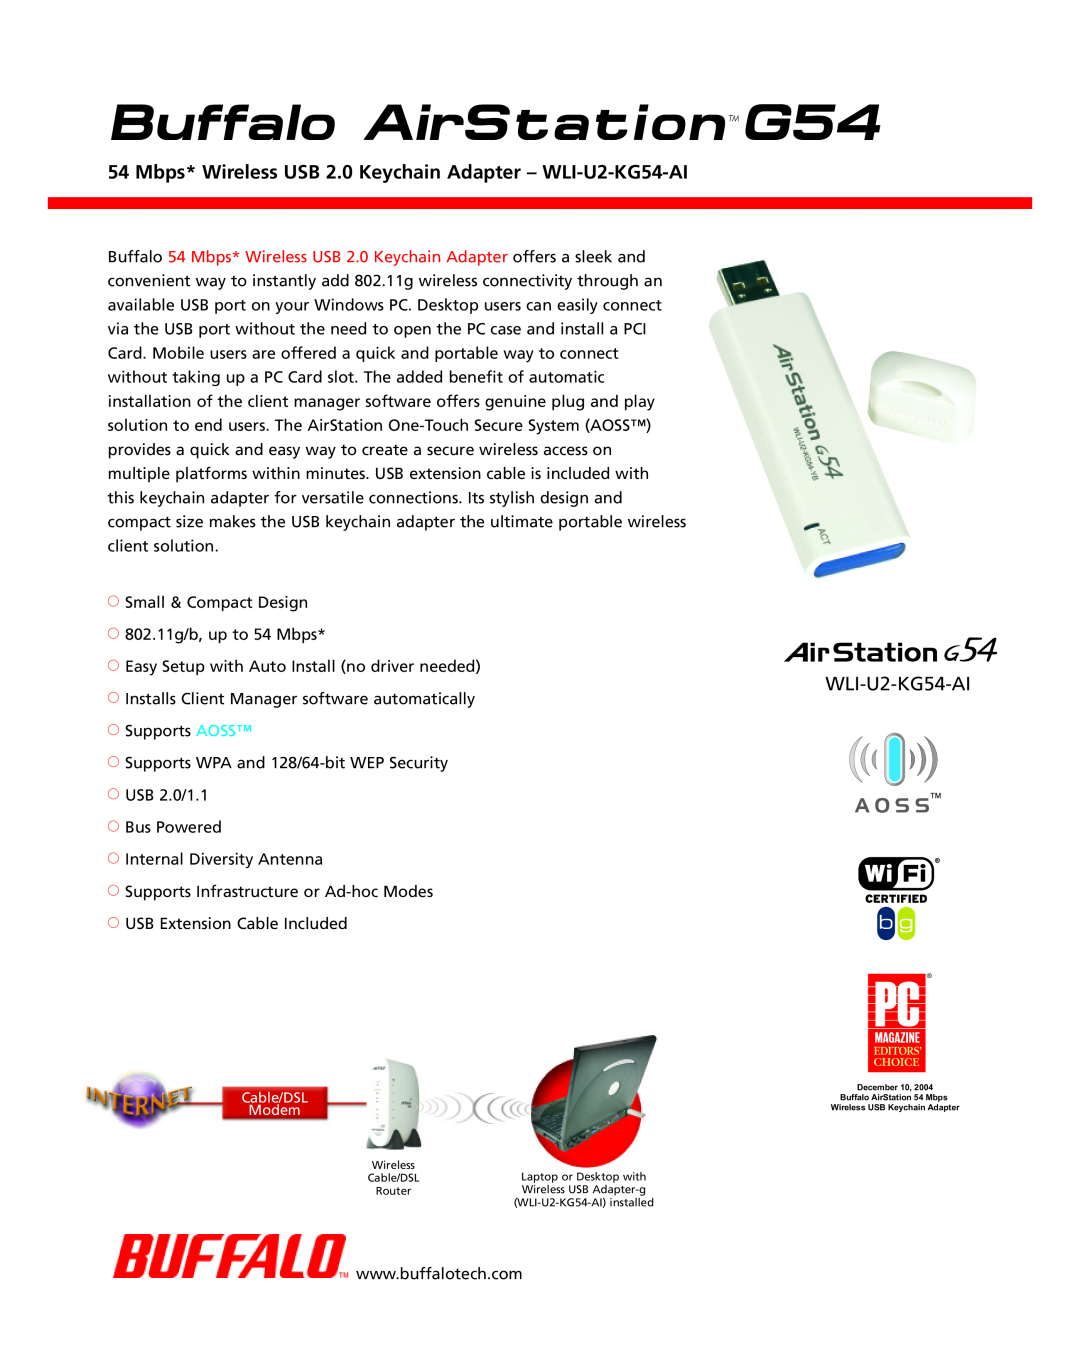 Buffalo Technology manual Mbps* Wireless USB 2.0 Keychain Adapter - WLI-U2-KG54-AI, Buffalo AirStationG54 